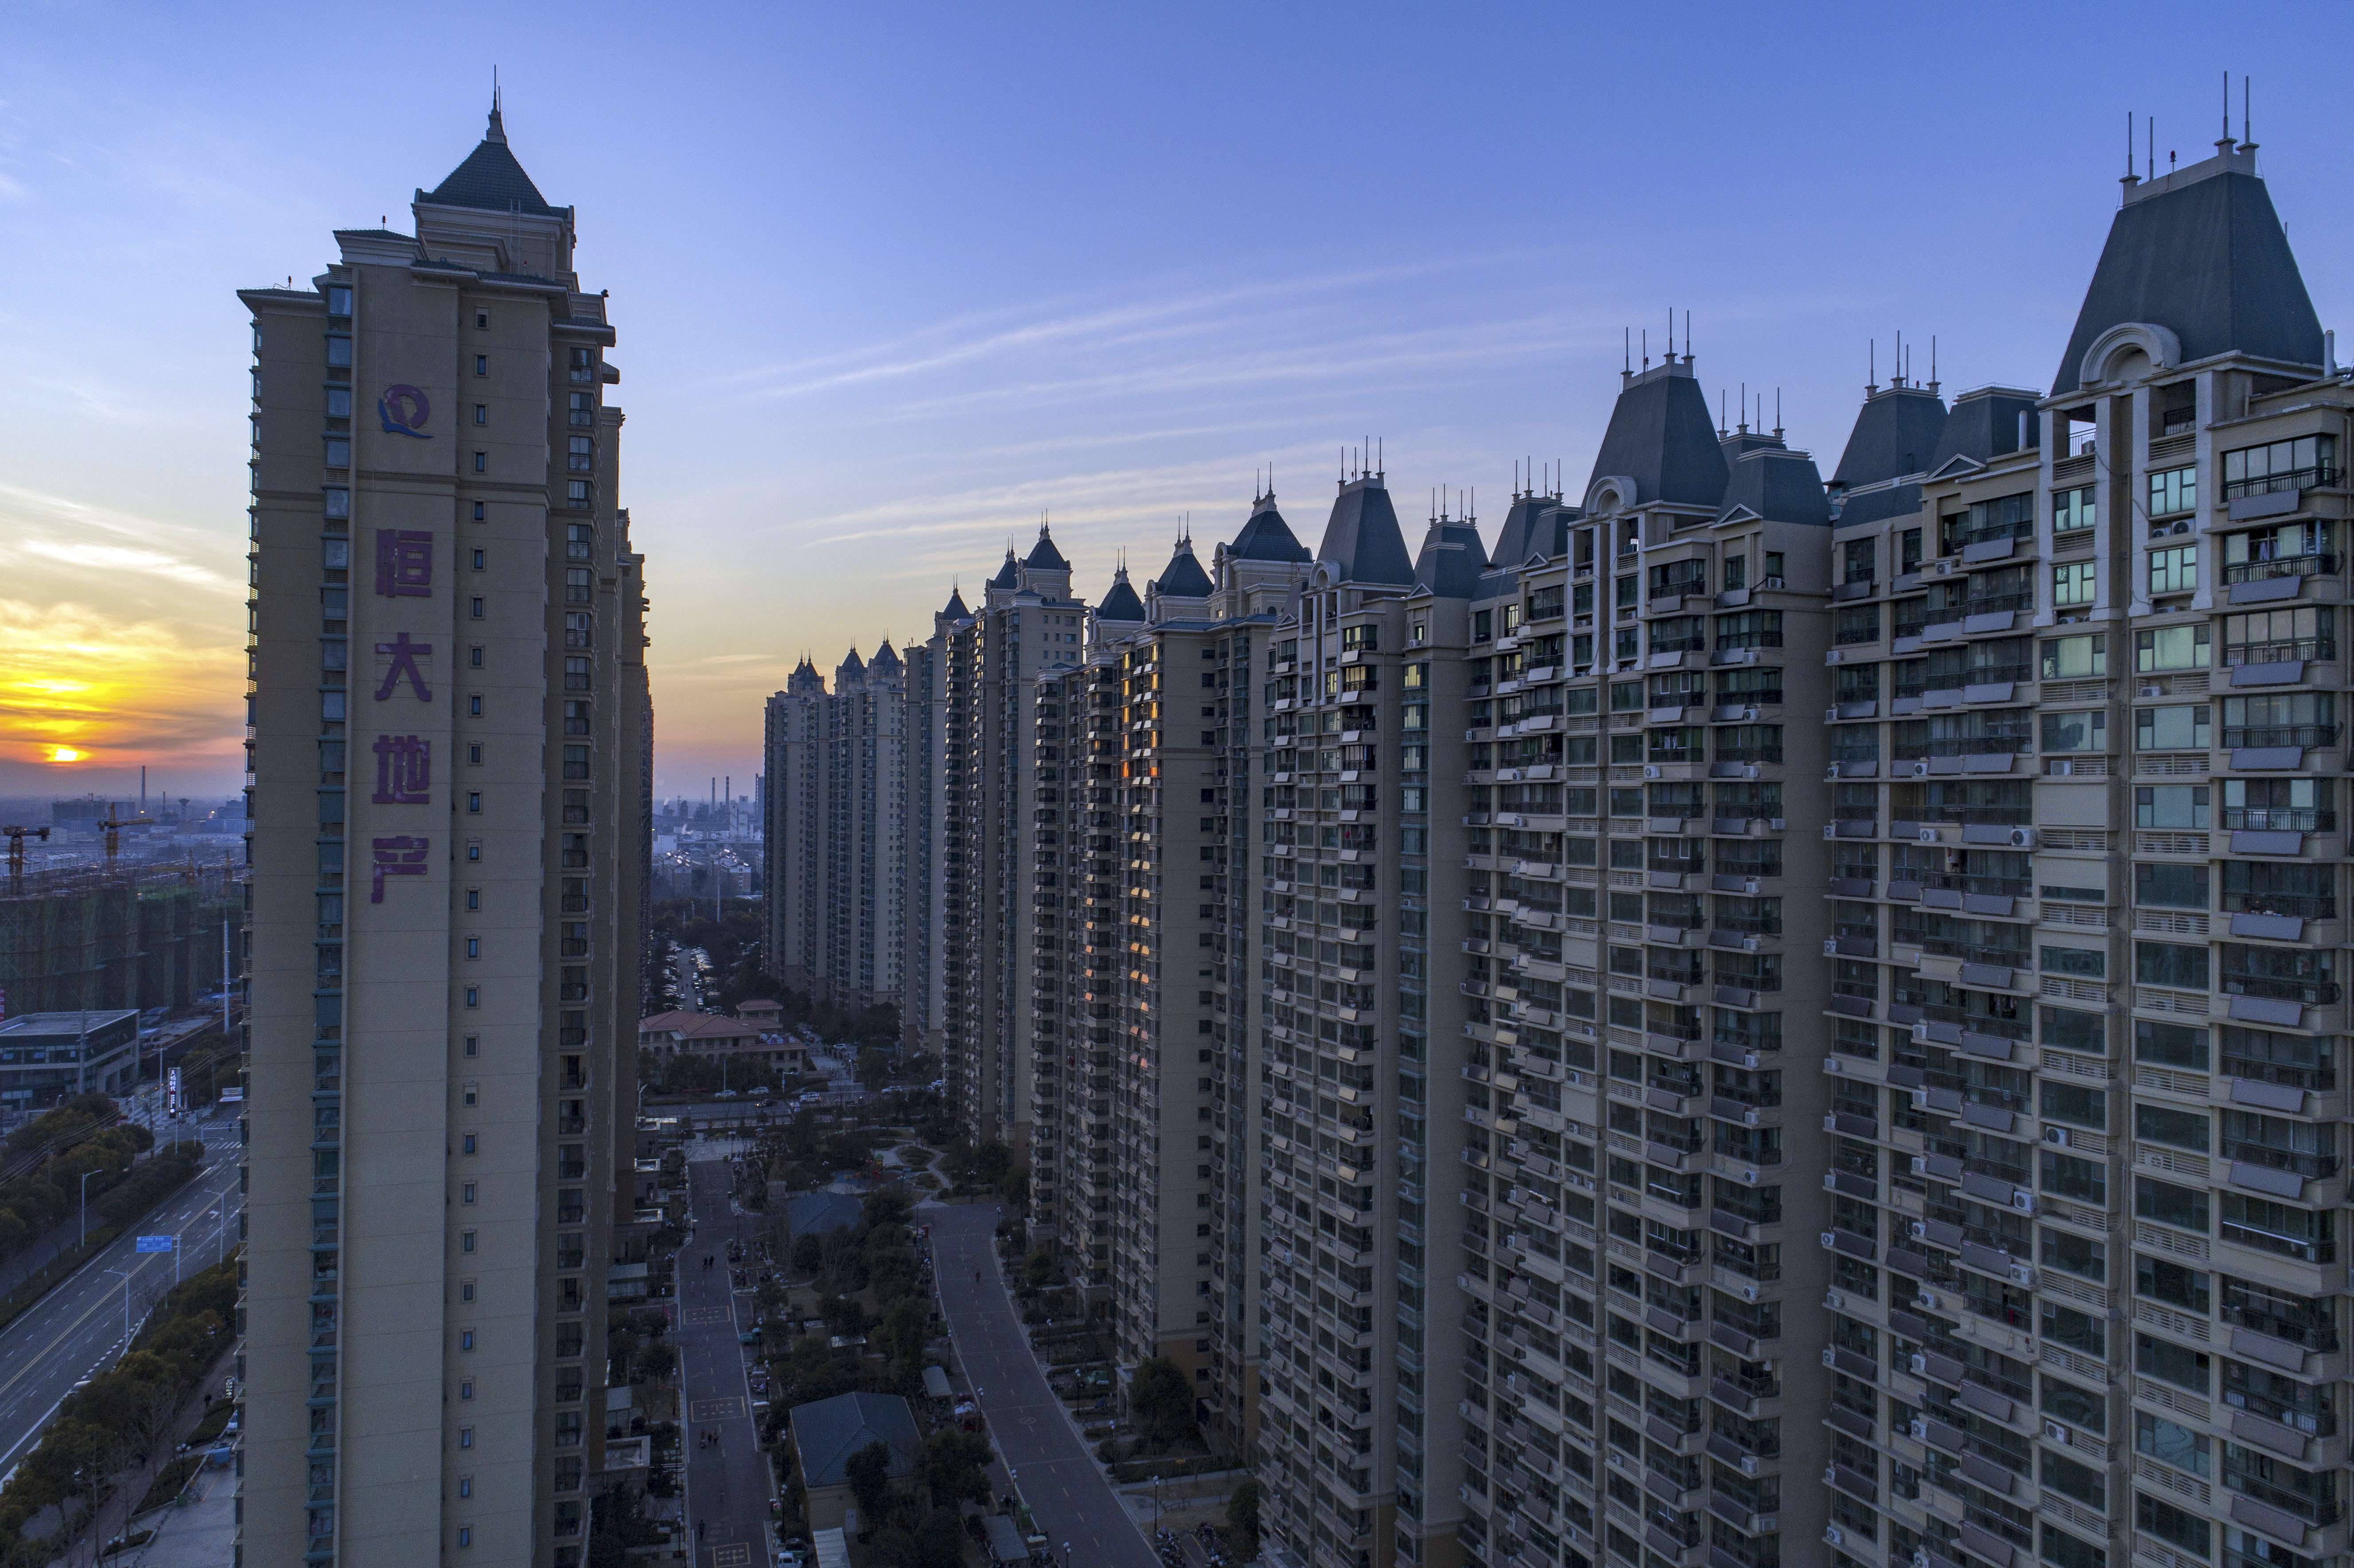 Chine : tout comprendre en 8 questions à la crise du géant immobilier Evergrande